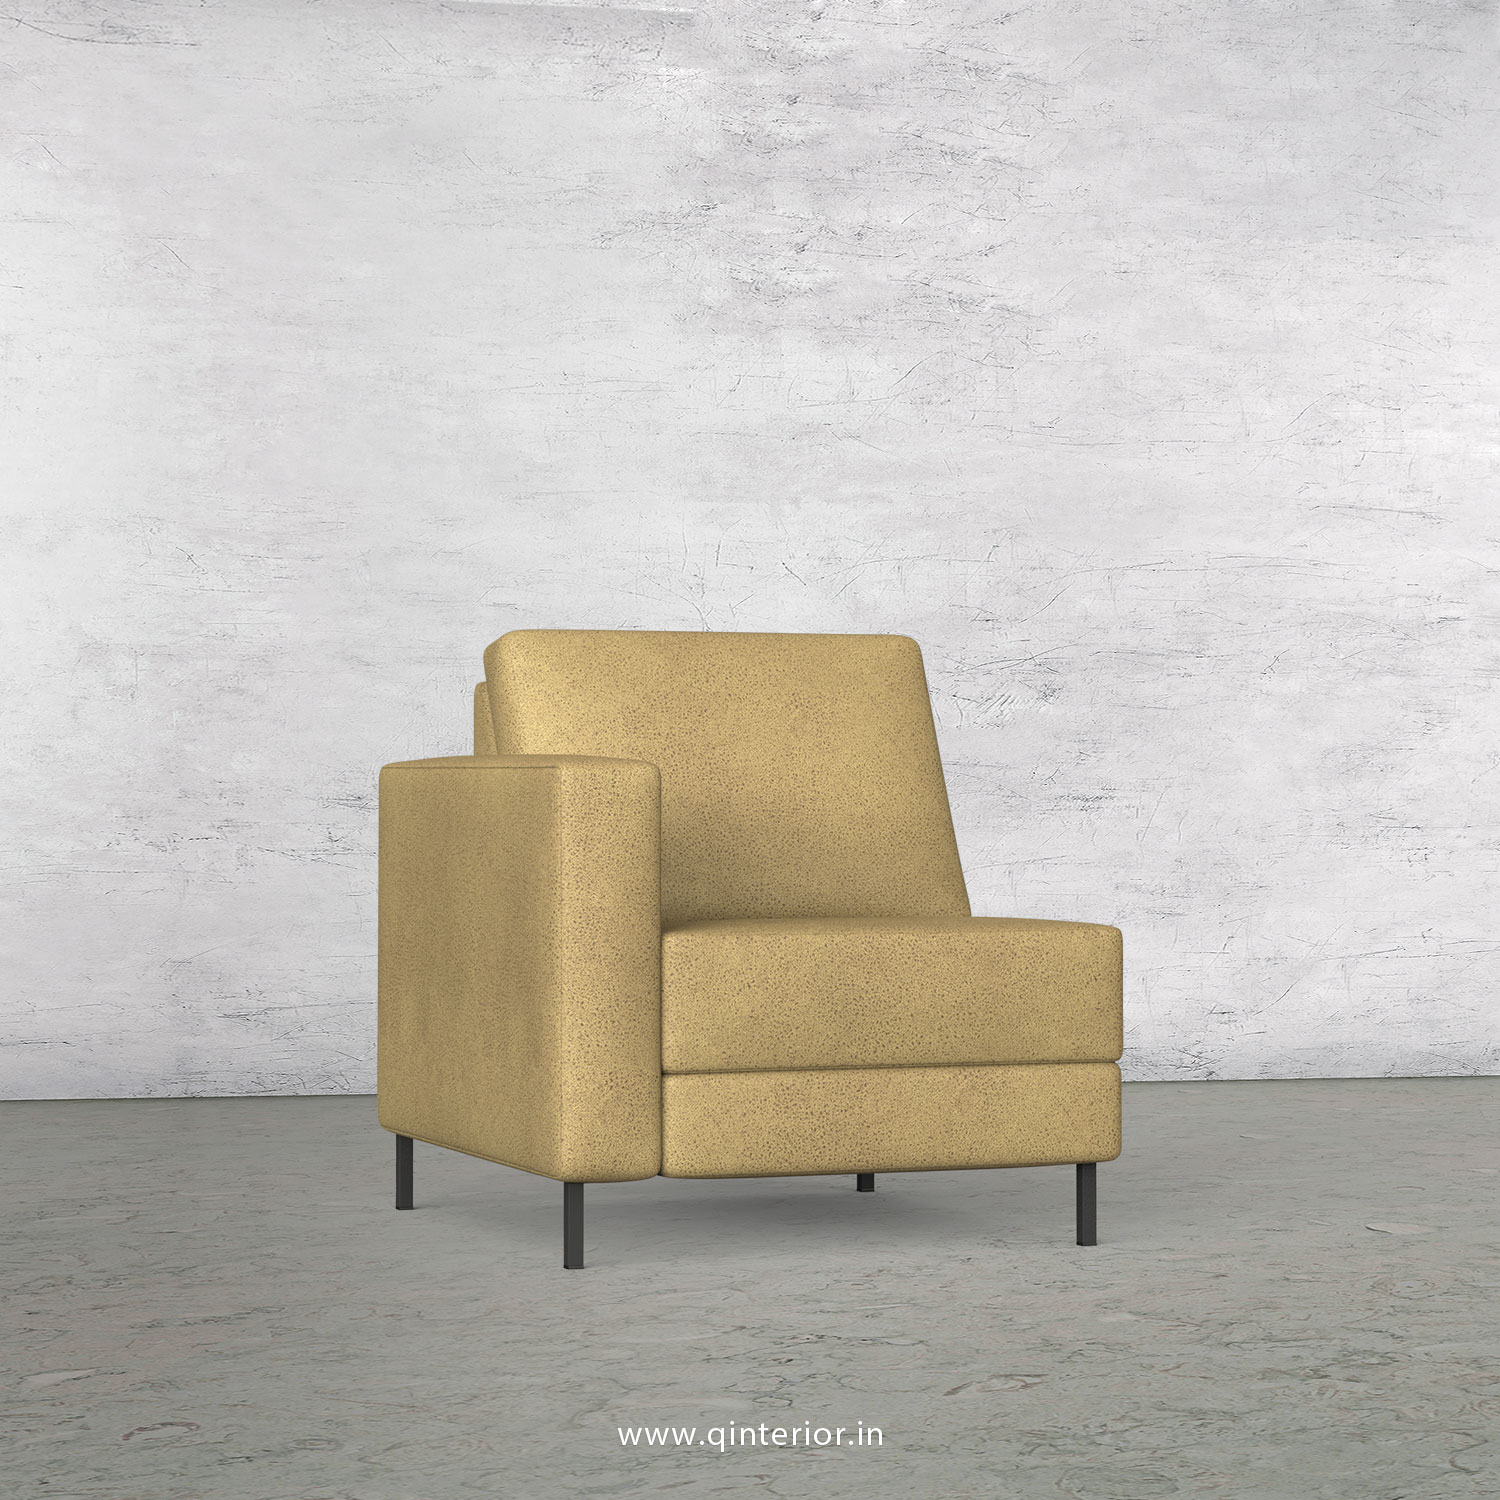 Nirvana 1 Seater Modular Sofa in Fab Leather Fabric - MSFA001 FL01